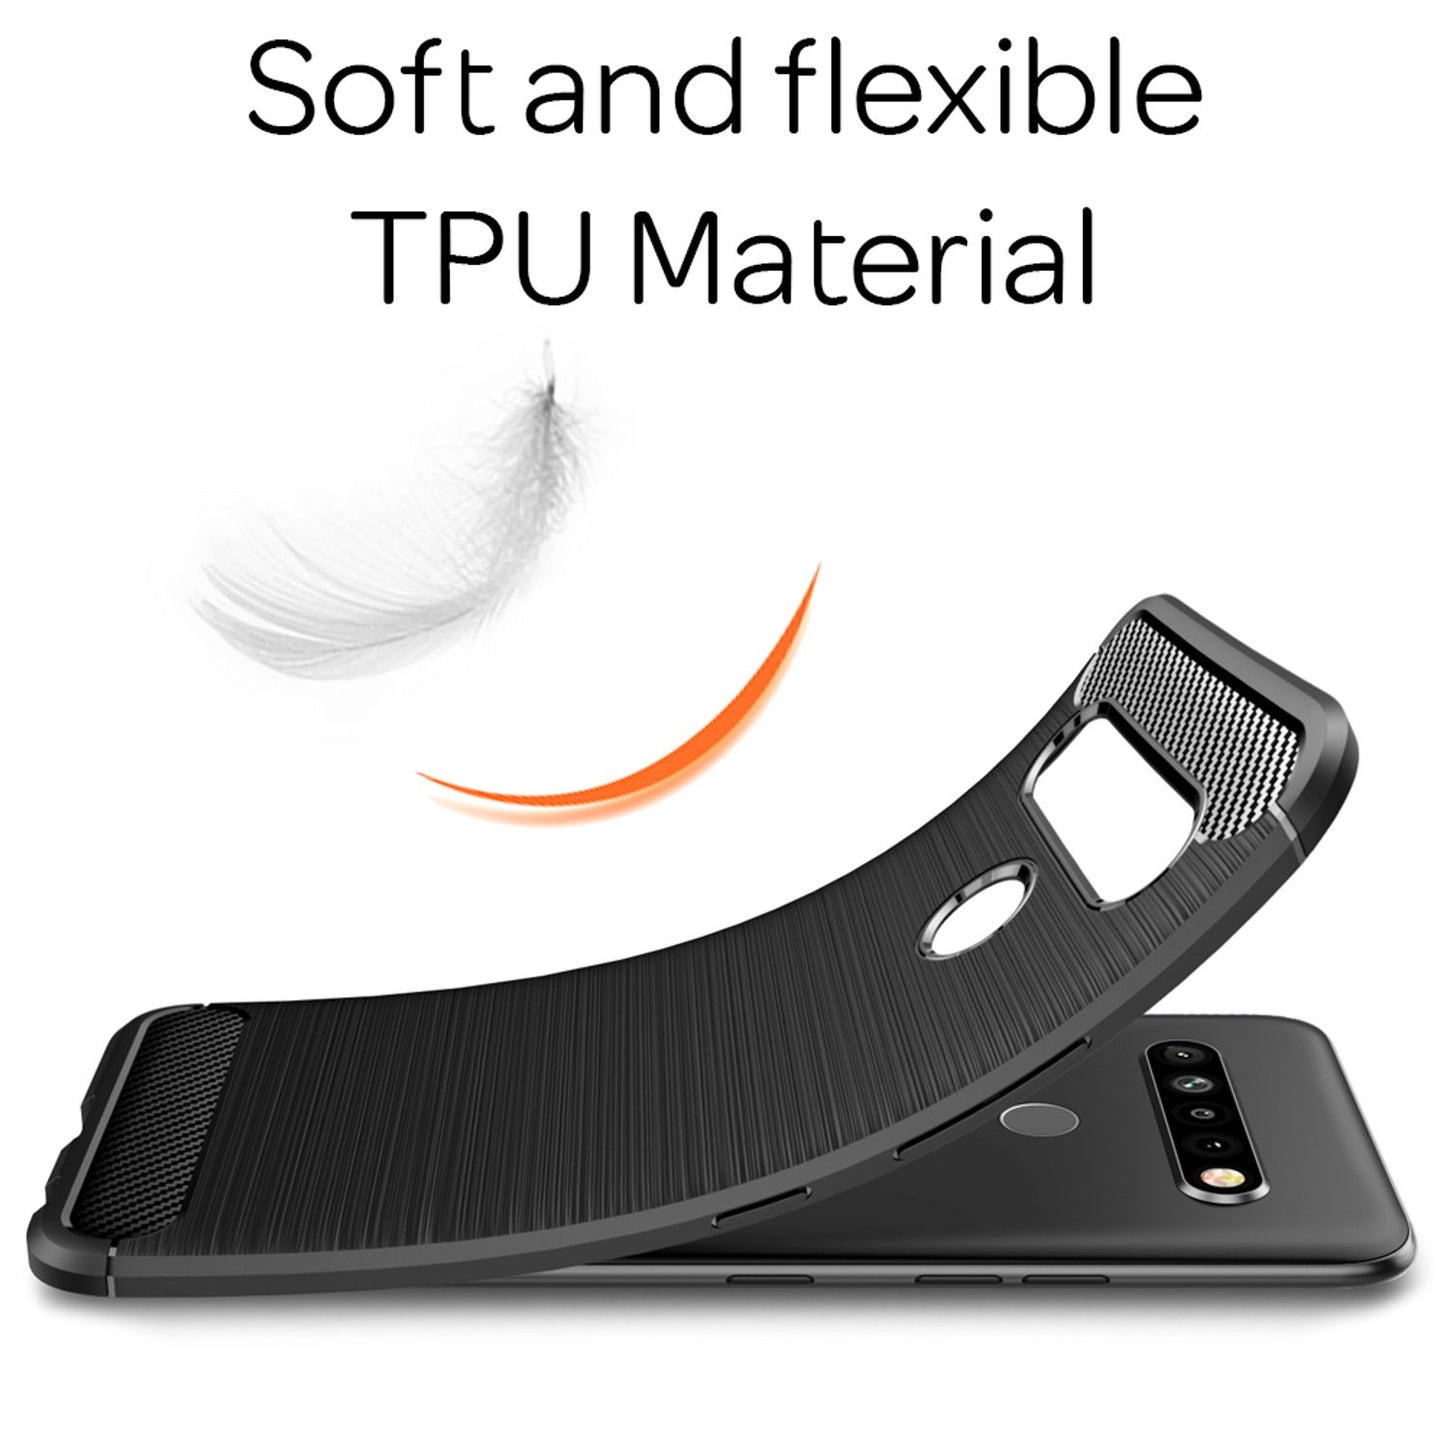 NALIA Handy Hülle für LG K61, Carbon Case Silikon Cover Schutz Tasche Slim Etui